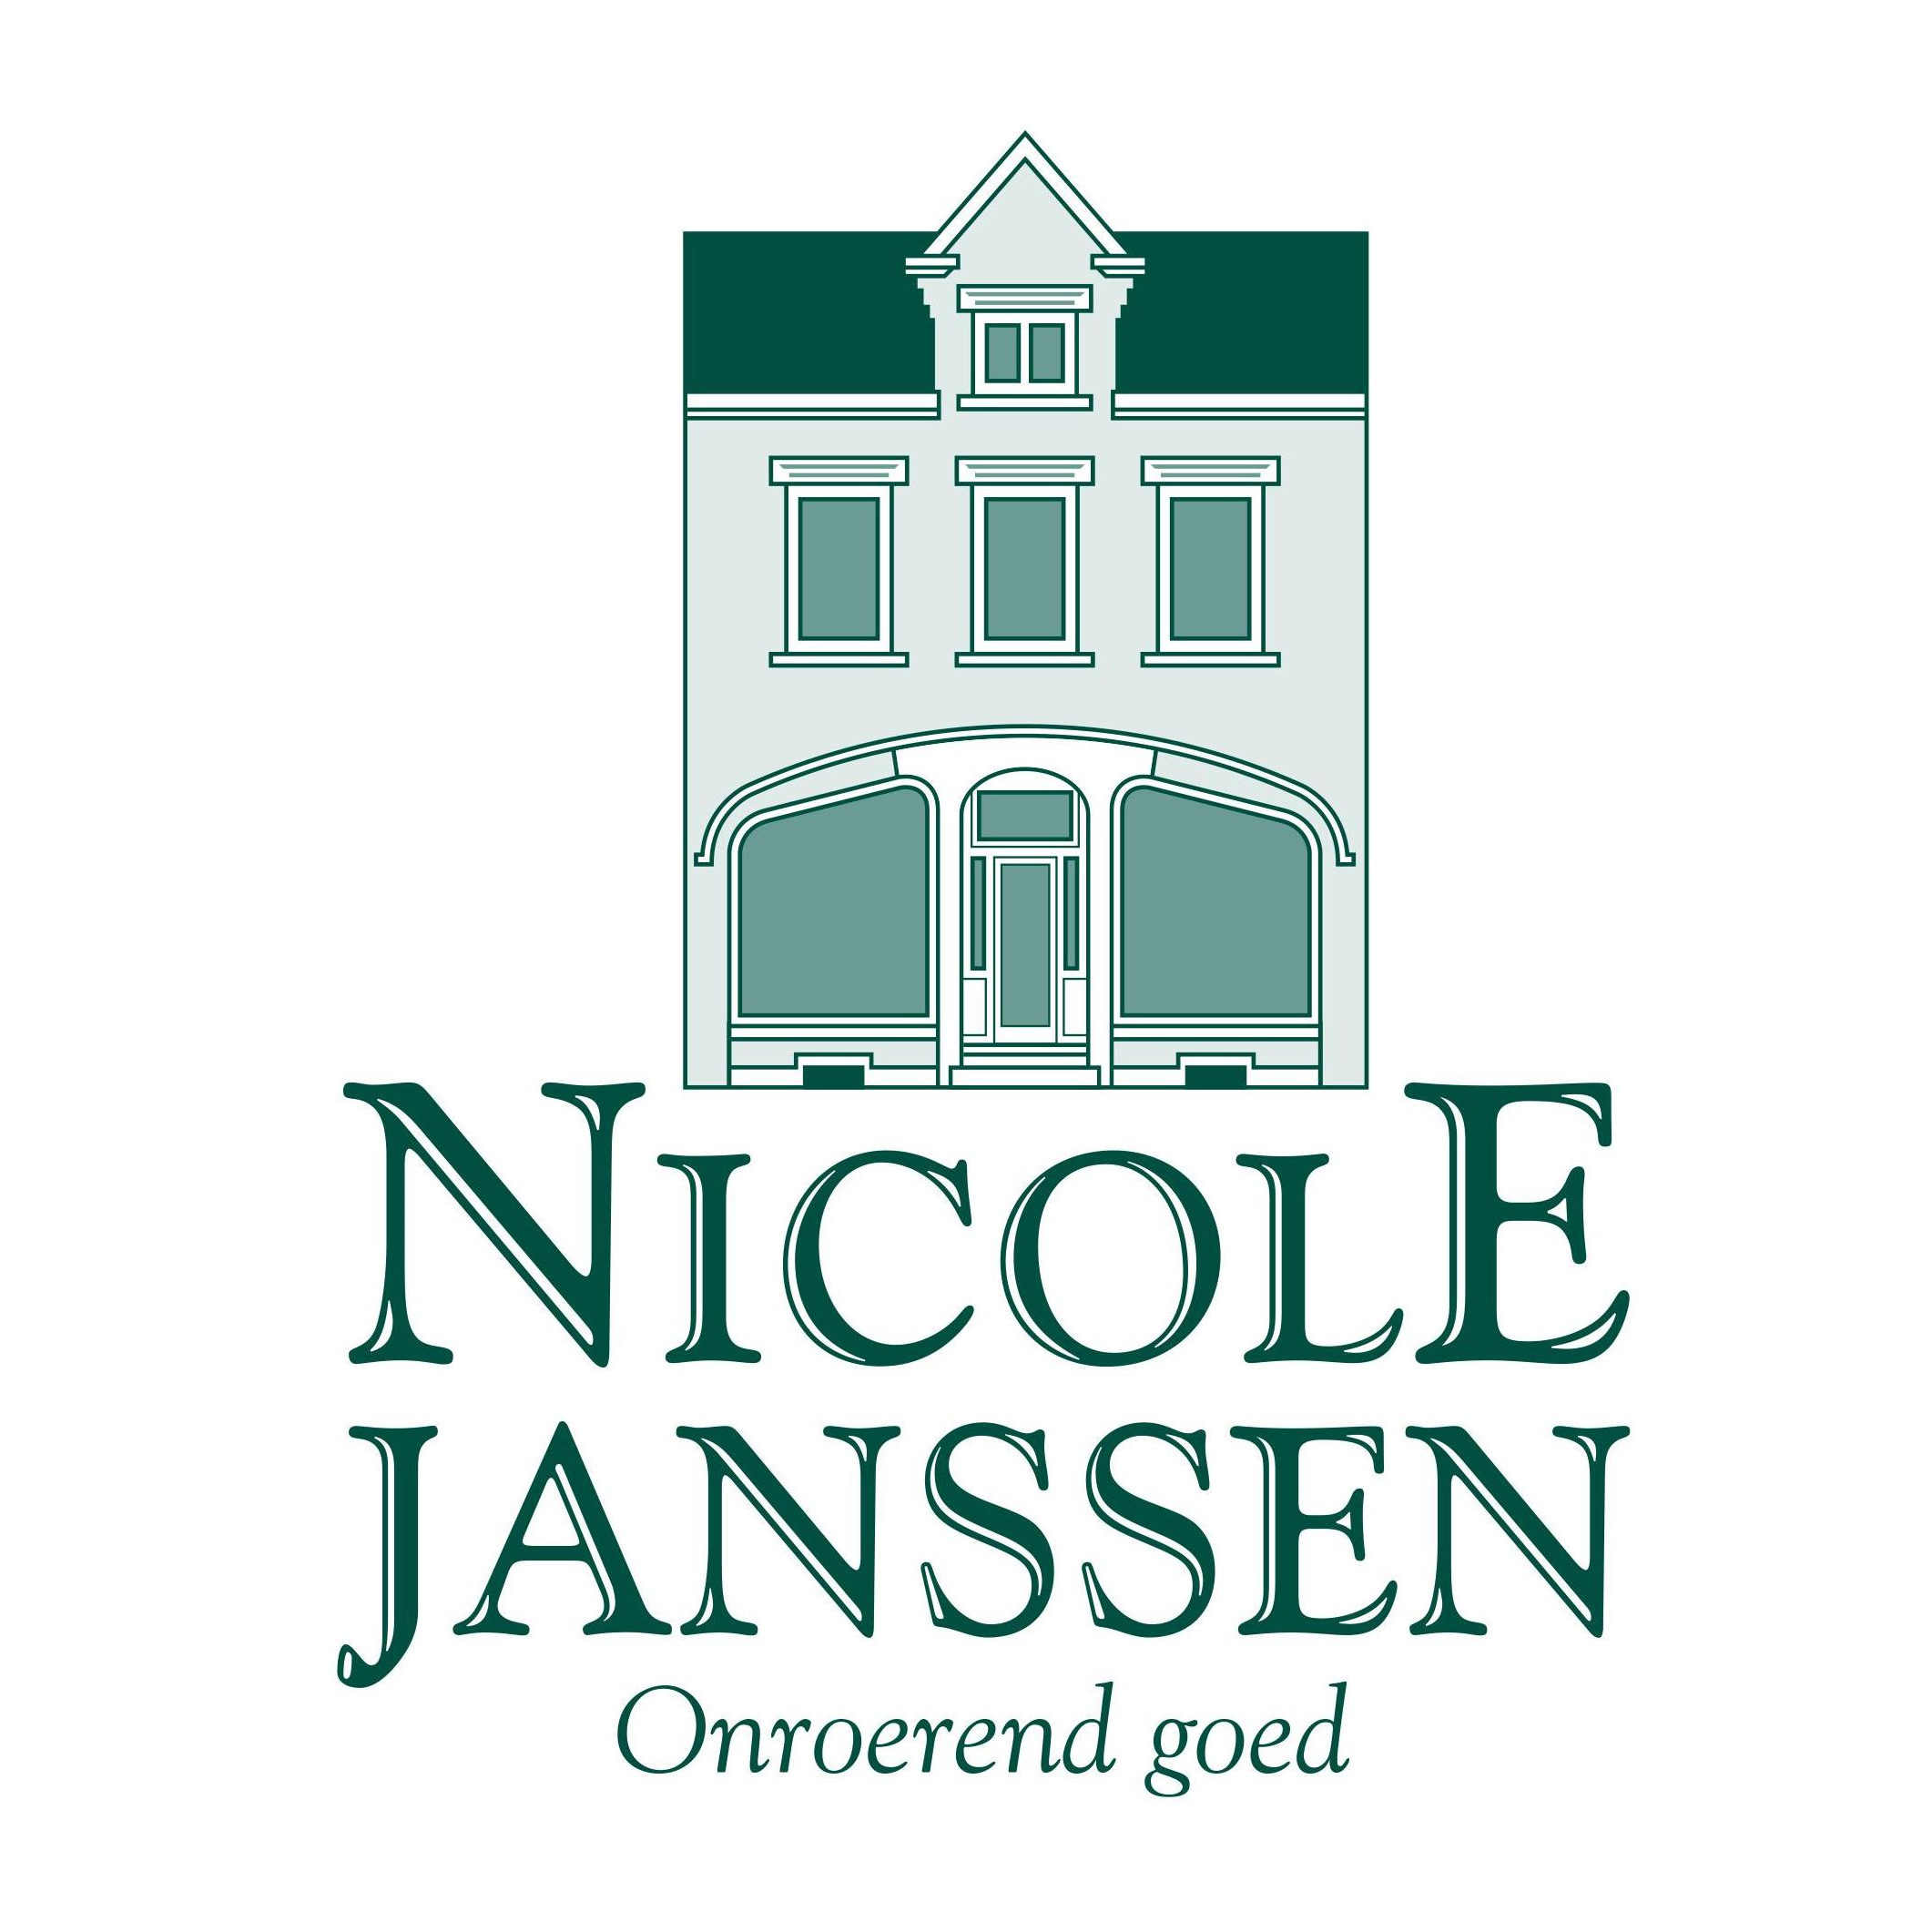 Nicole Janssen bvba